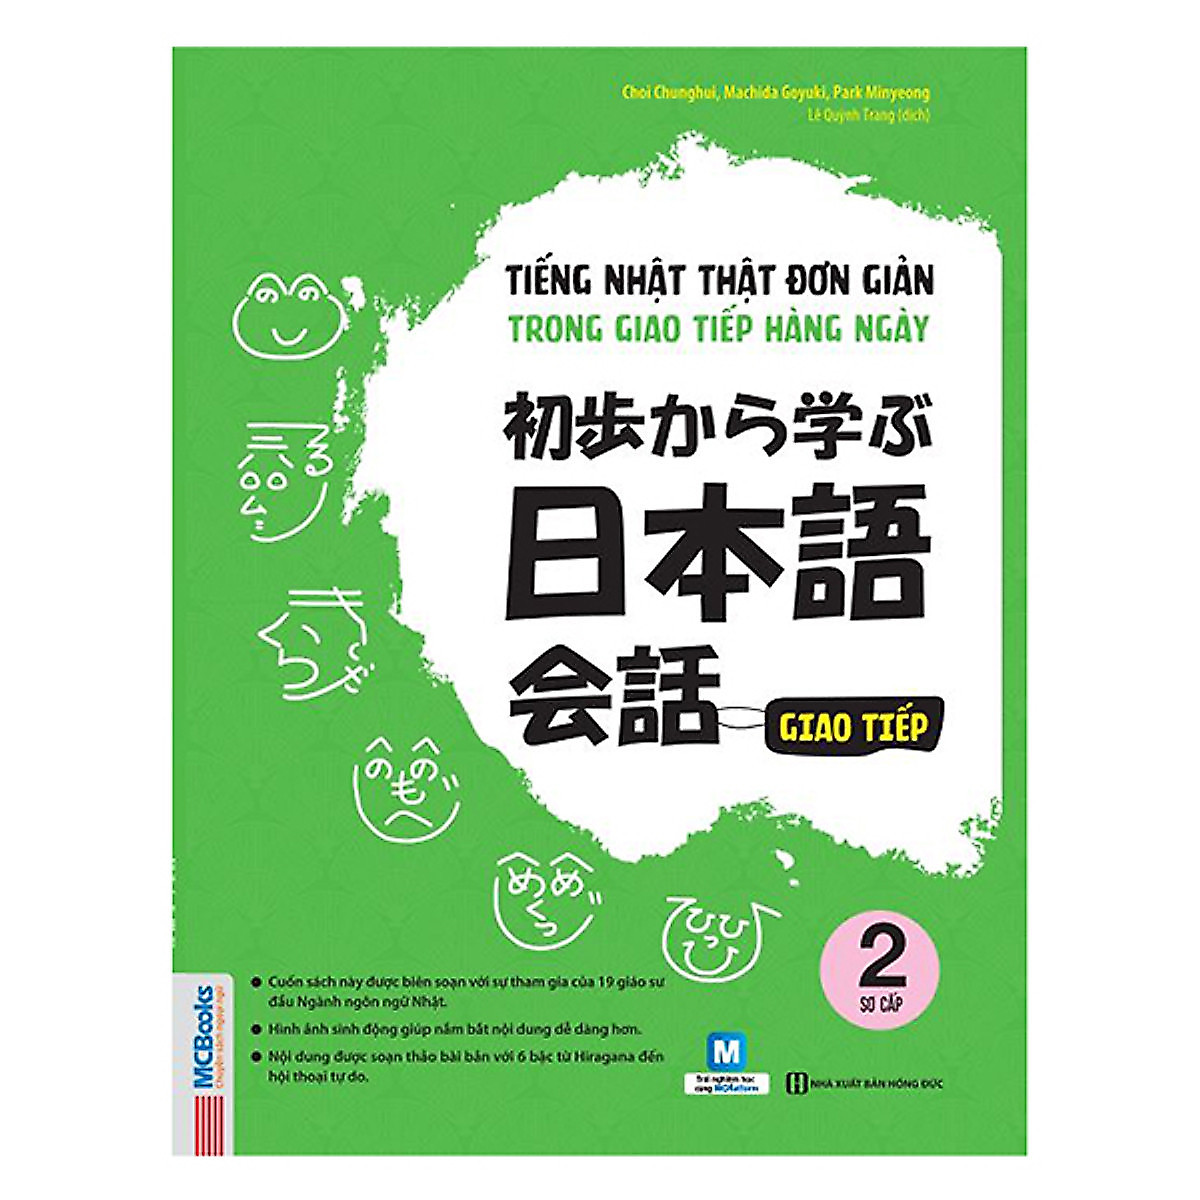 Trọn Bộ 3 Cuốn Tiếng Nhật Thật Đơn Giản Dành Cho Người Mới Bắt Đầu: Giao Tiếp 1 + Giao Tiếp Sơ Cấp 2 + Giao Tiếp Sơ Trung Cấp 3 (Học Cùng App MCBooks) – MinhAnBooks